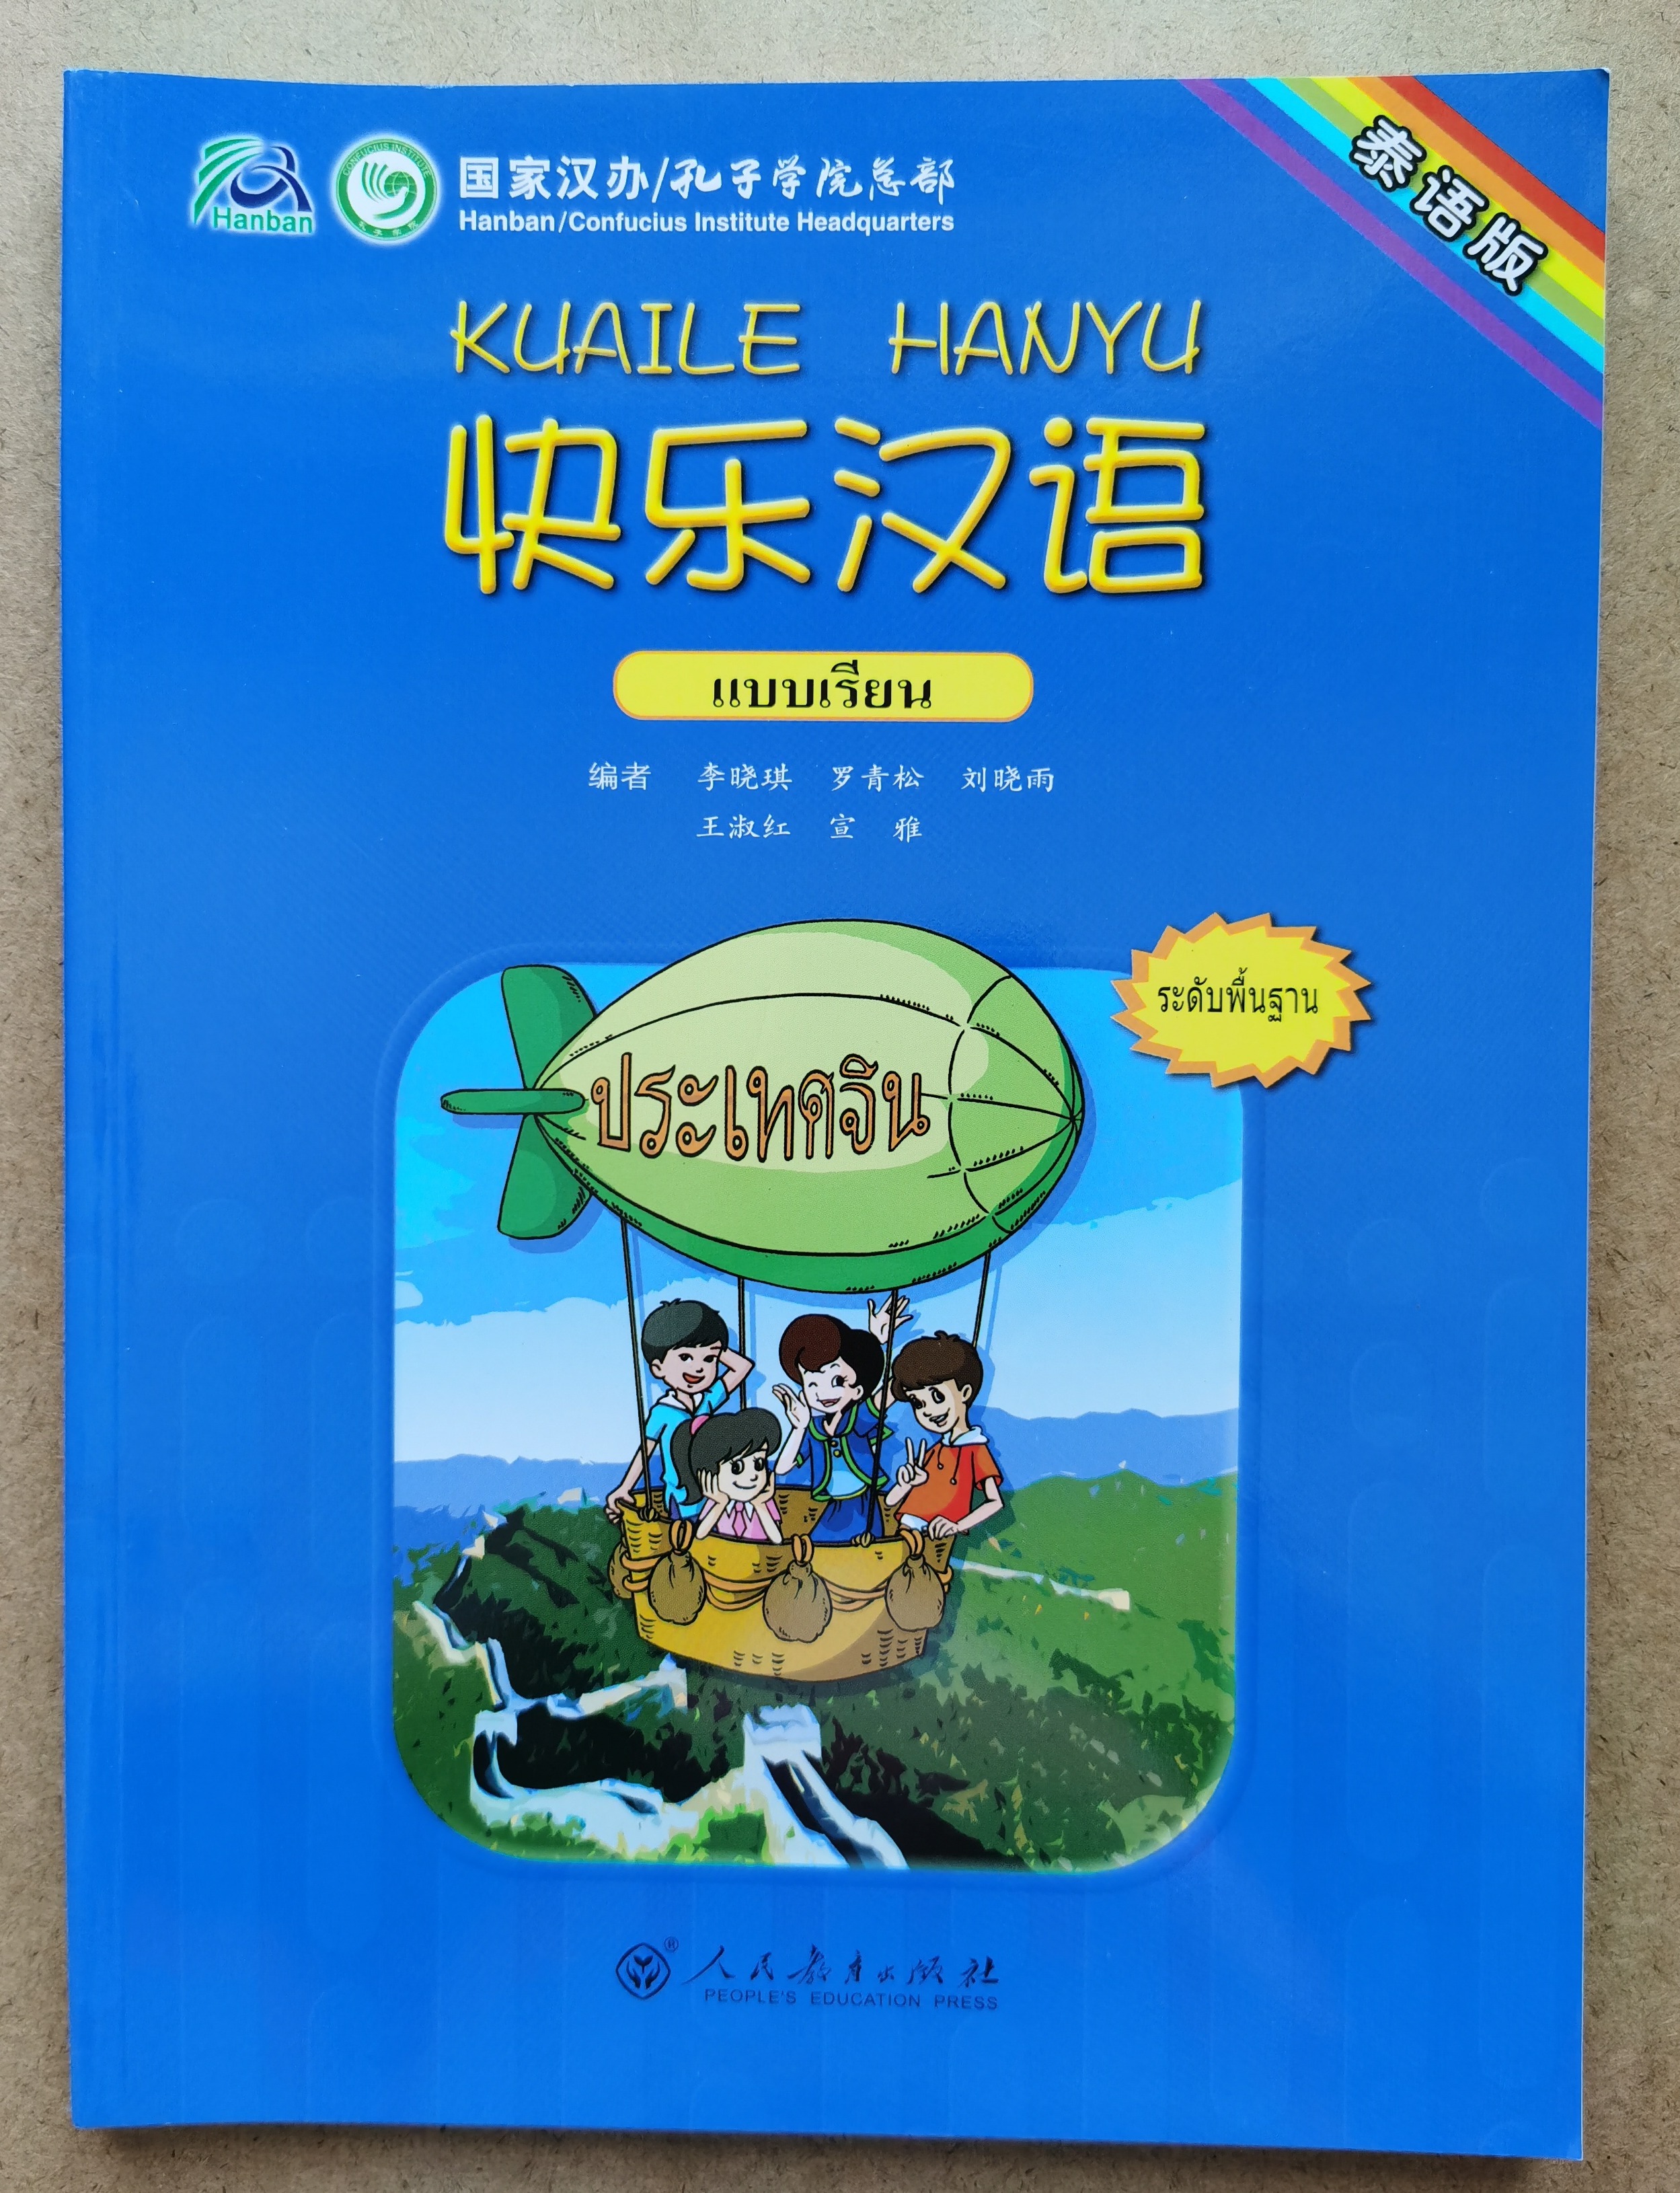 Happy Chinese  KUAILE HANYU1  Textbook  快乐汉语1